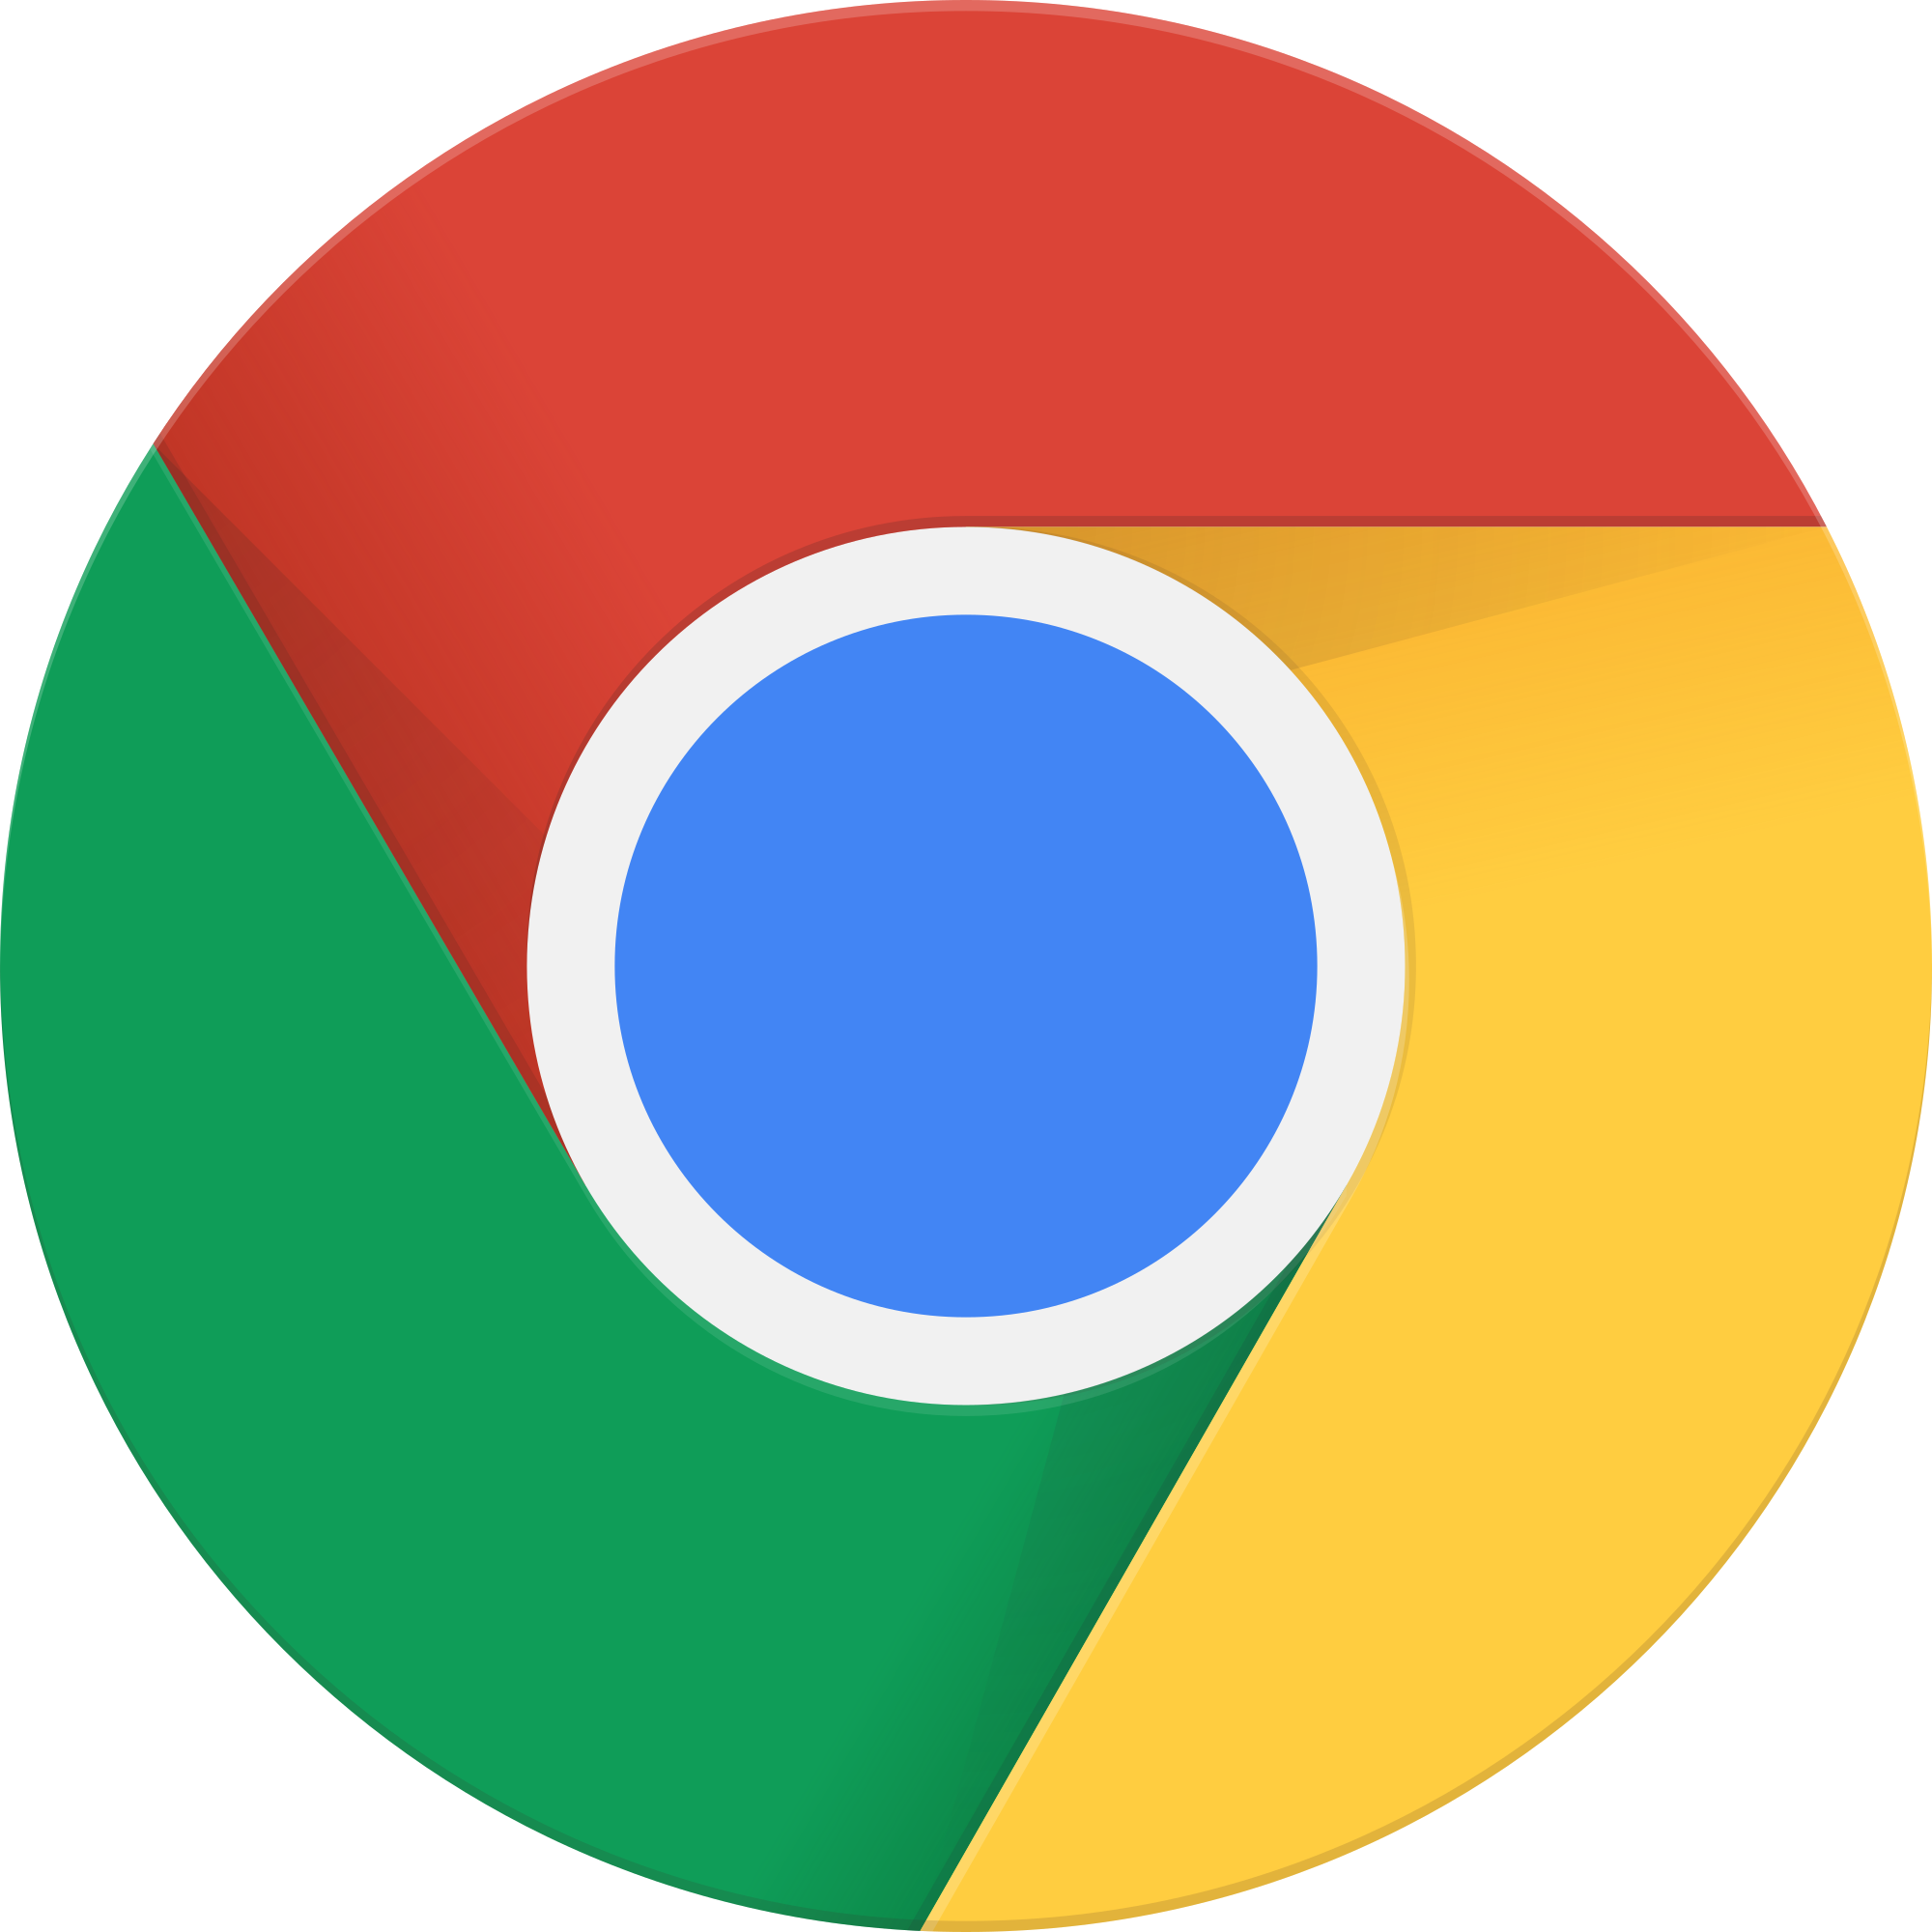 Logo: Google Chrome